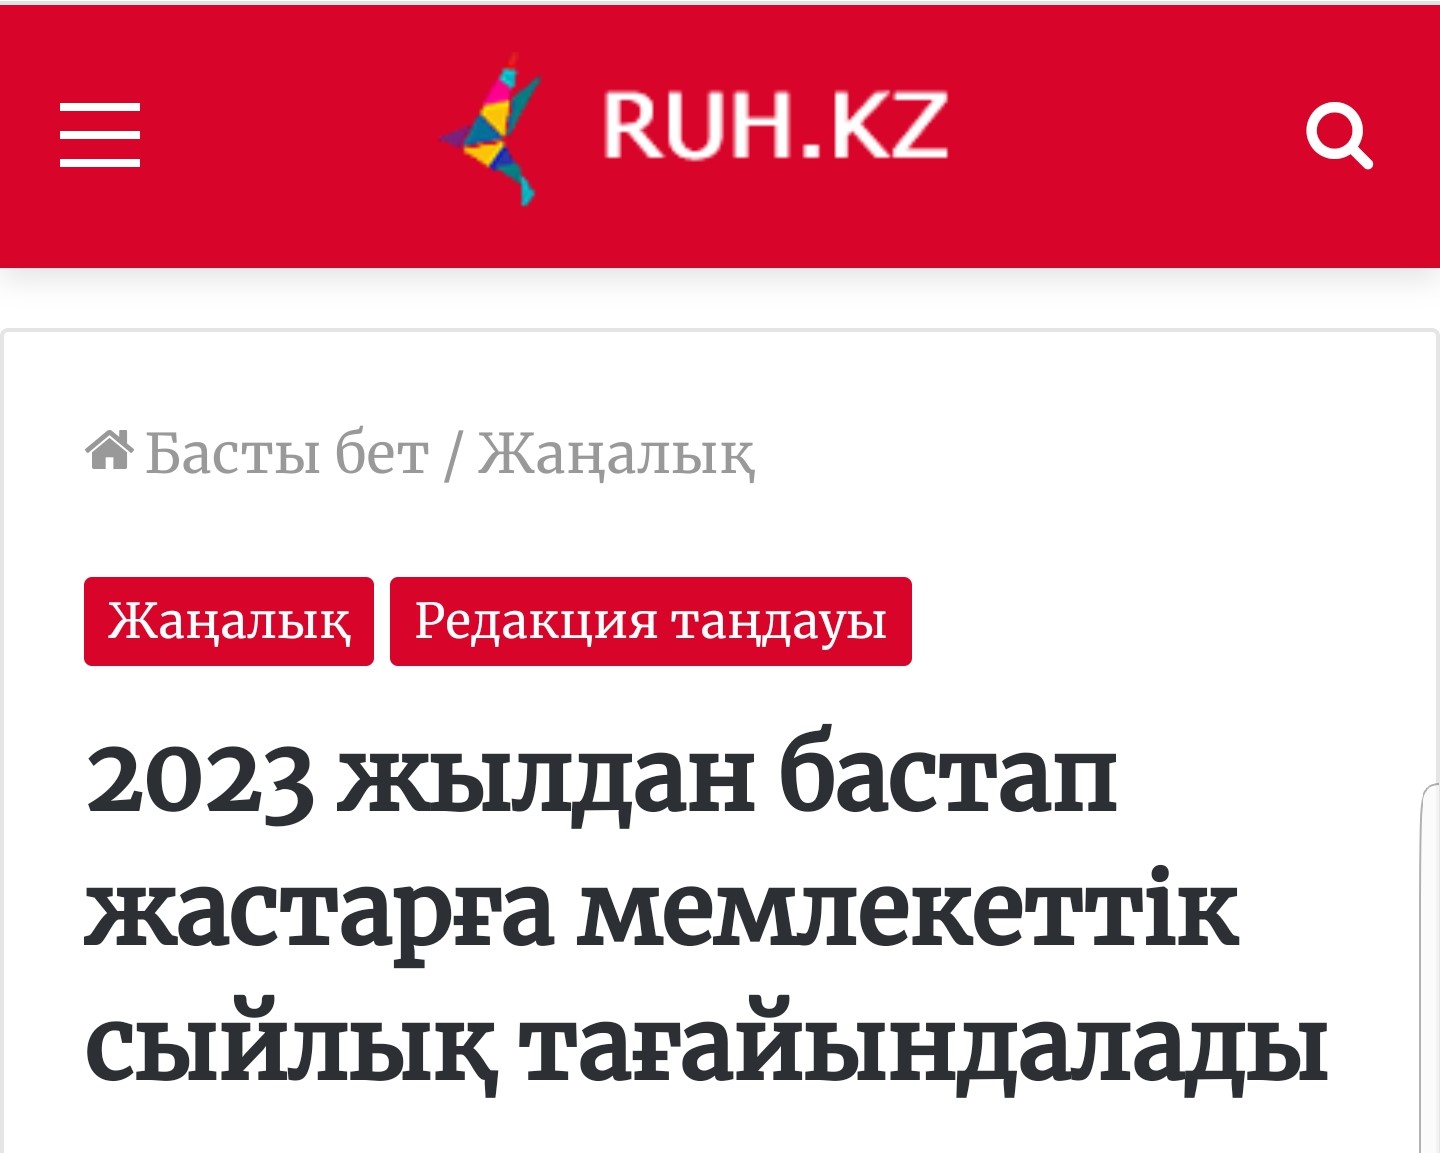 '2023년부터 젊은이들에게 국가상을 마련하겠다'는 언론 보도 - 출처: 'ruh.kz'